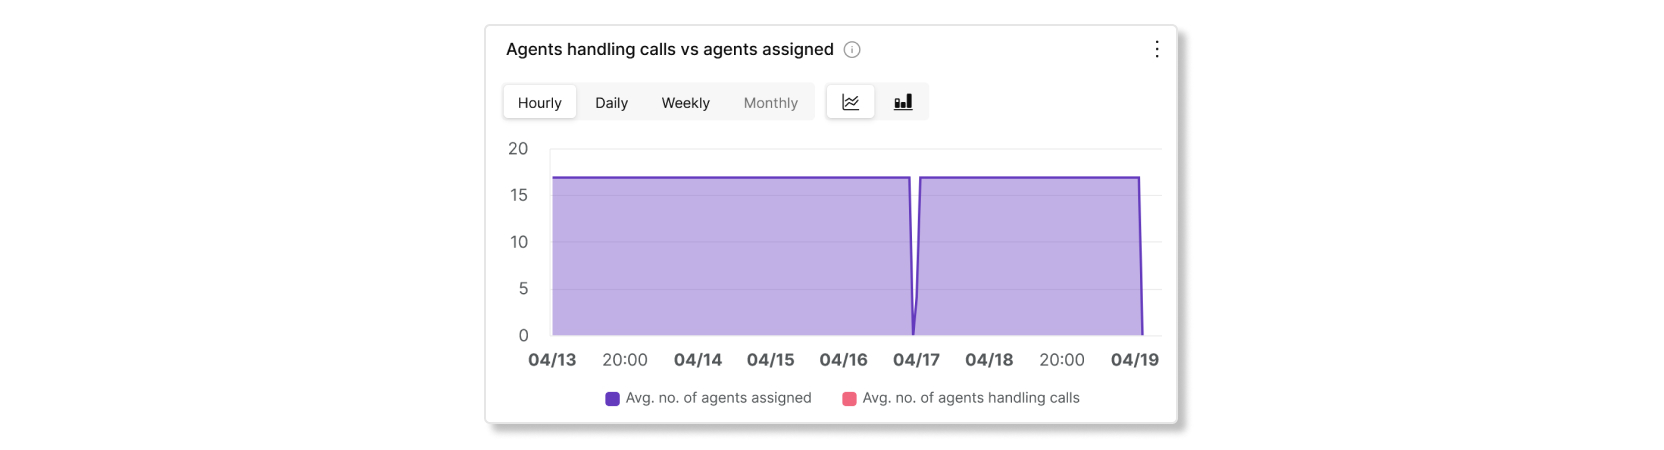 Tabla de agentes que manejan llamadas frente a agentes asignados en el análisis de estadísticas de agentes de la cola de llamada